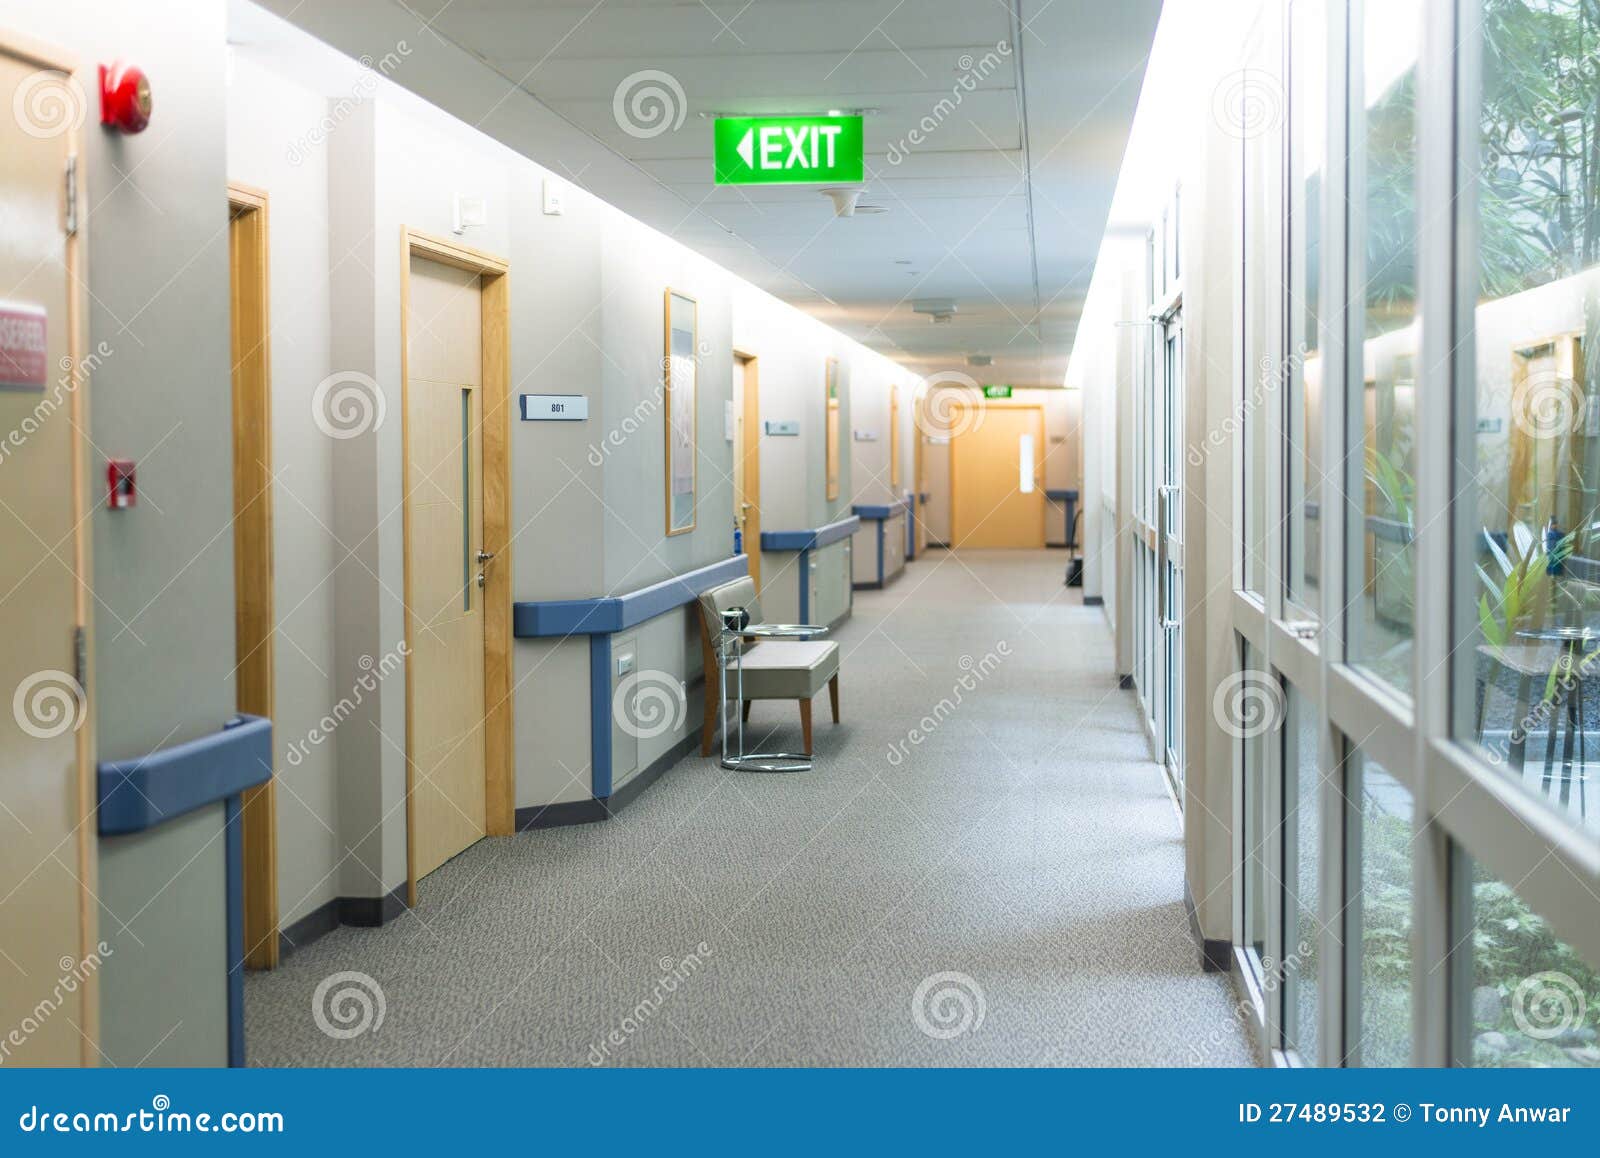 hospital ward hallway